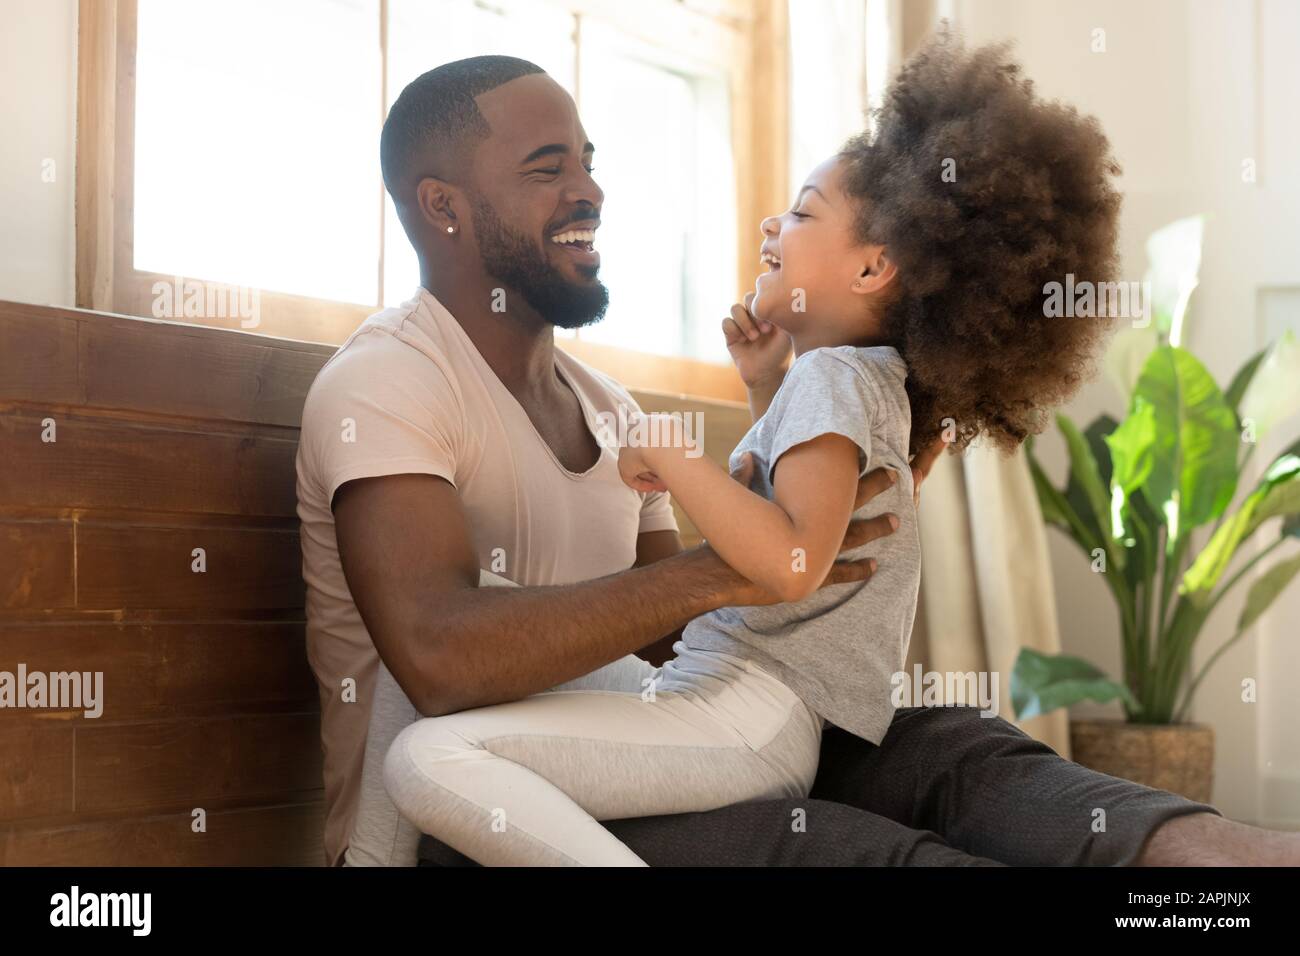 Afrikanischer Vater kitzelt kleine Tochterfamilie, die Spaß im Haus hat Stockfoto